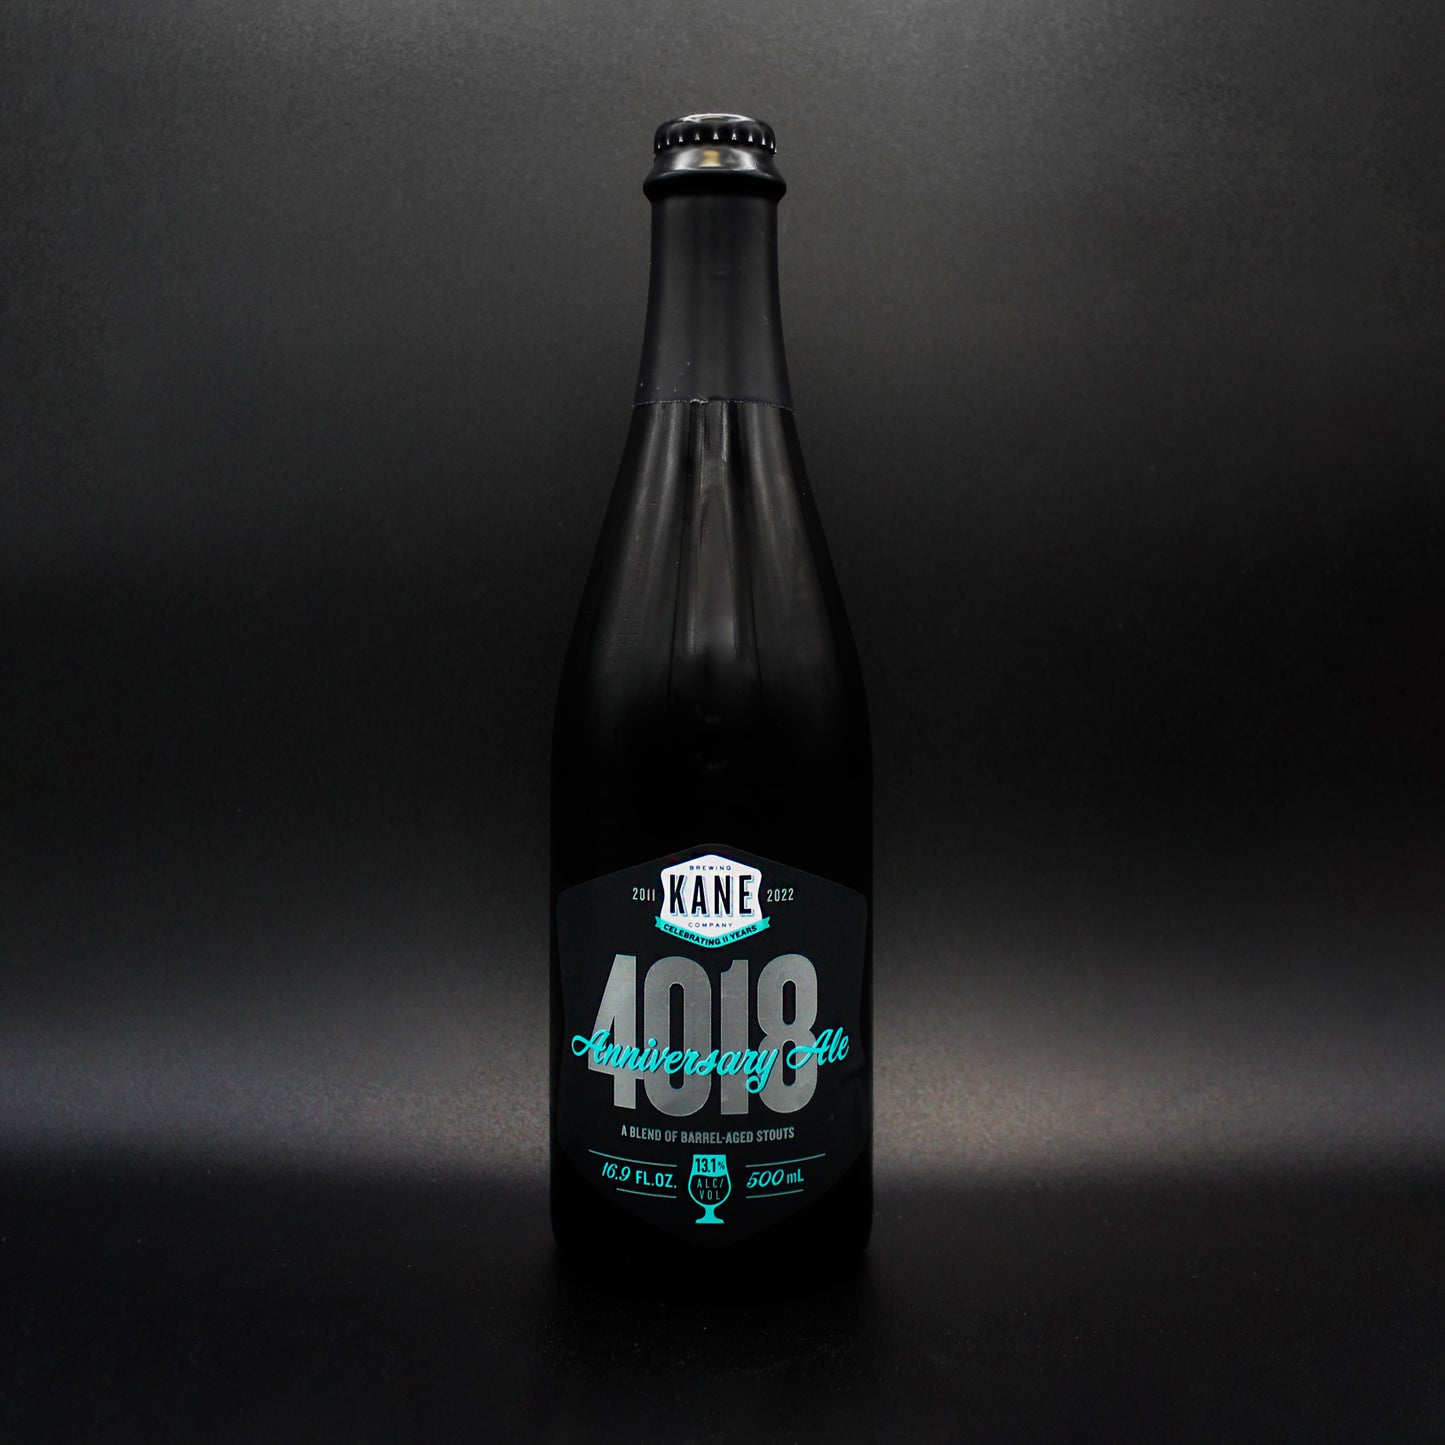 4018 Anniversary Ale